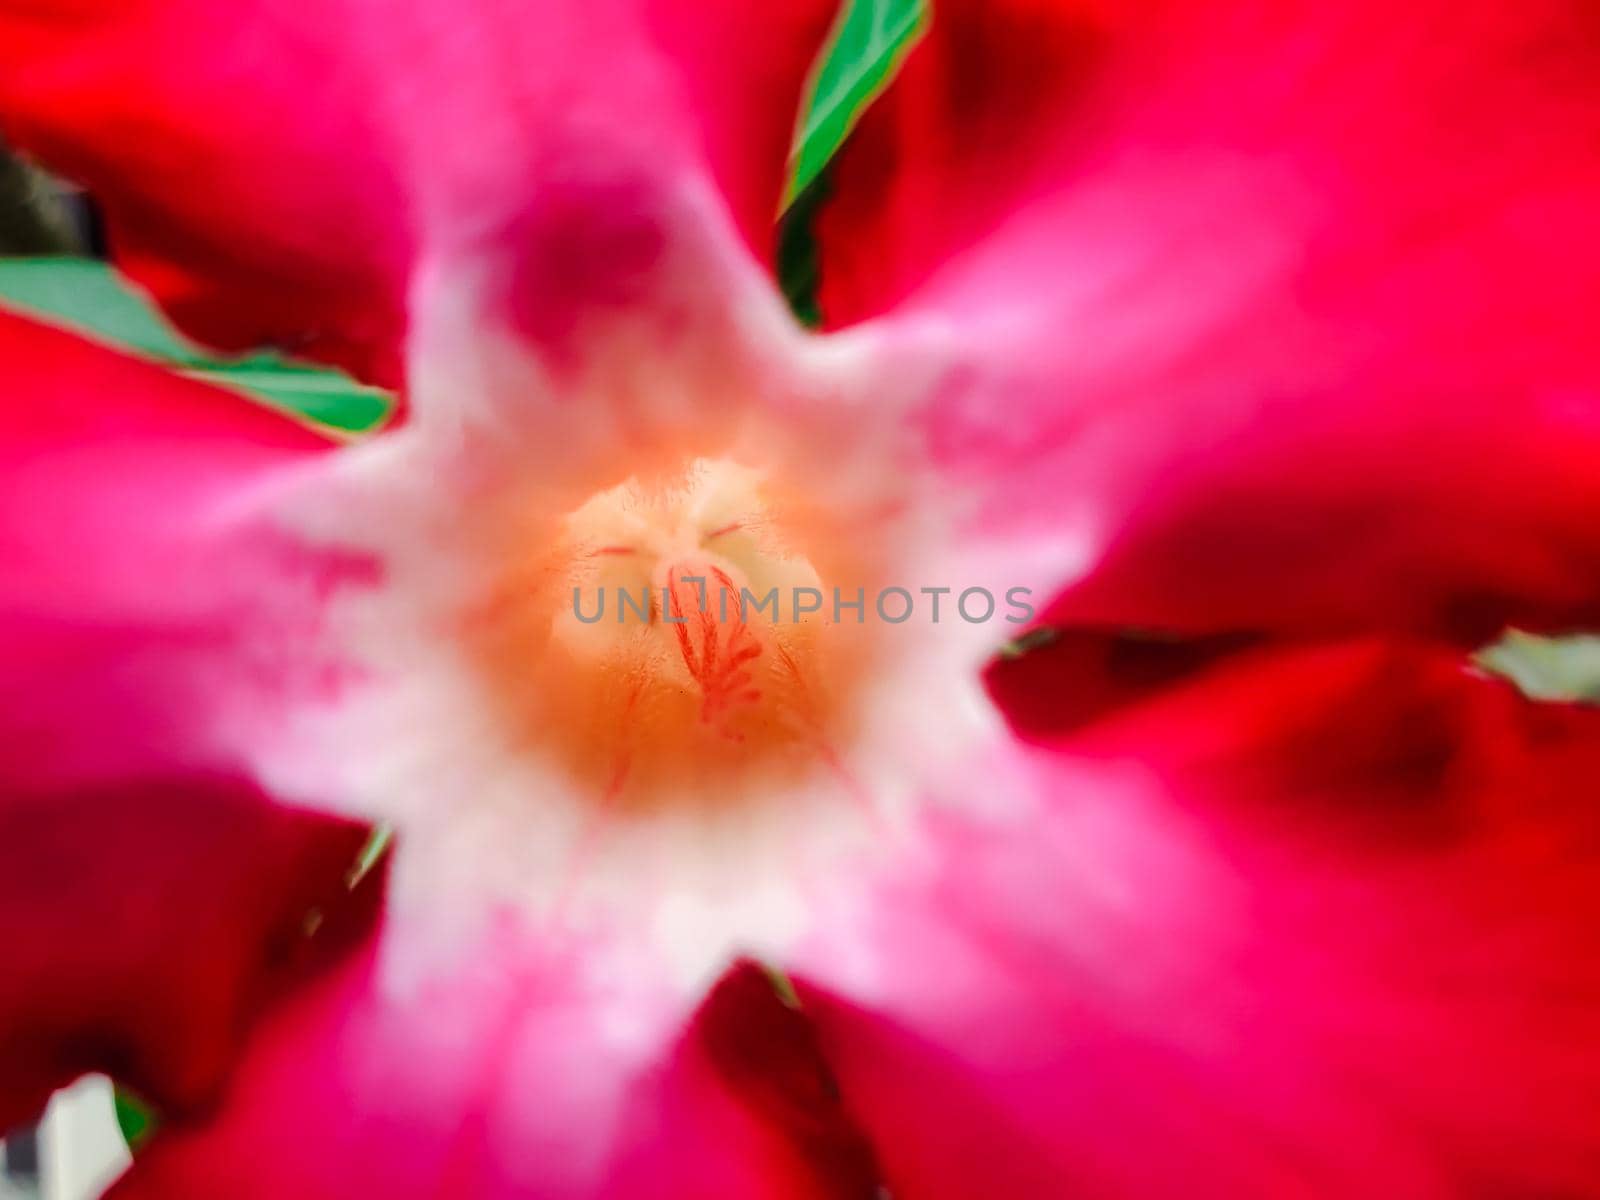 Flower (Adenium obesum or Desert-rose) by NongEngEng